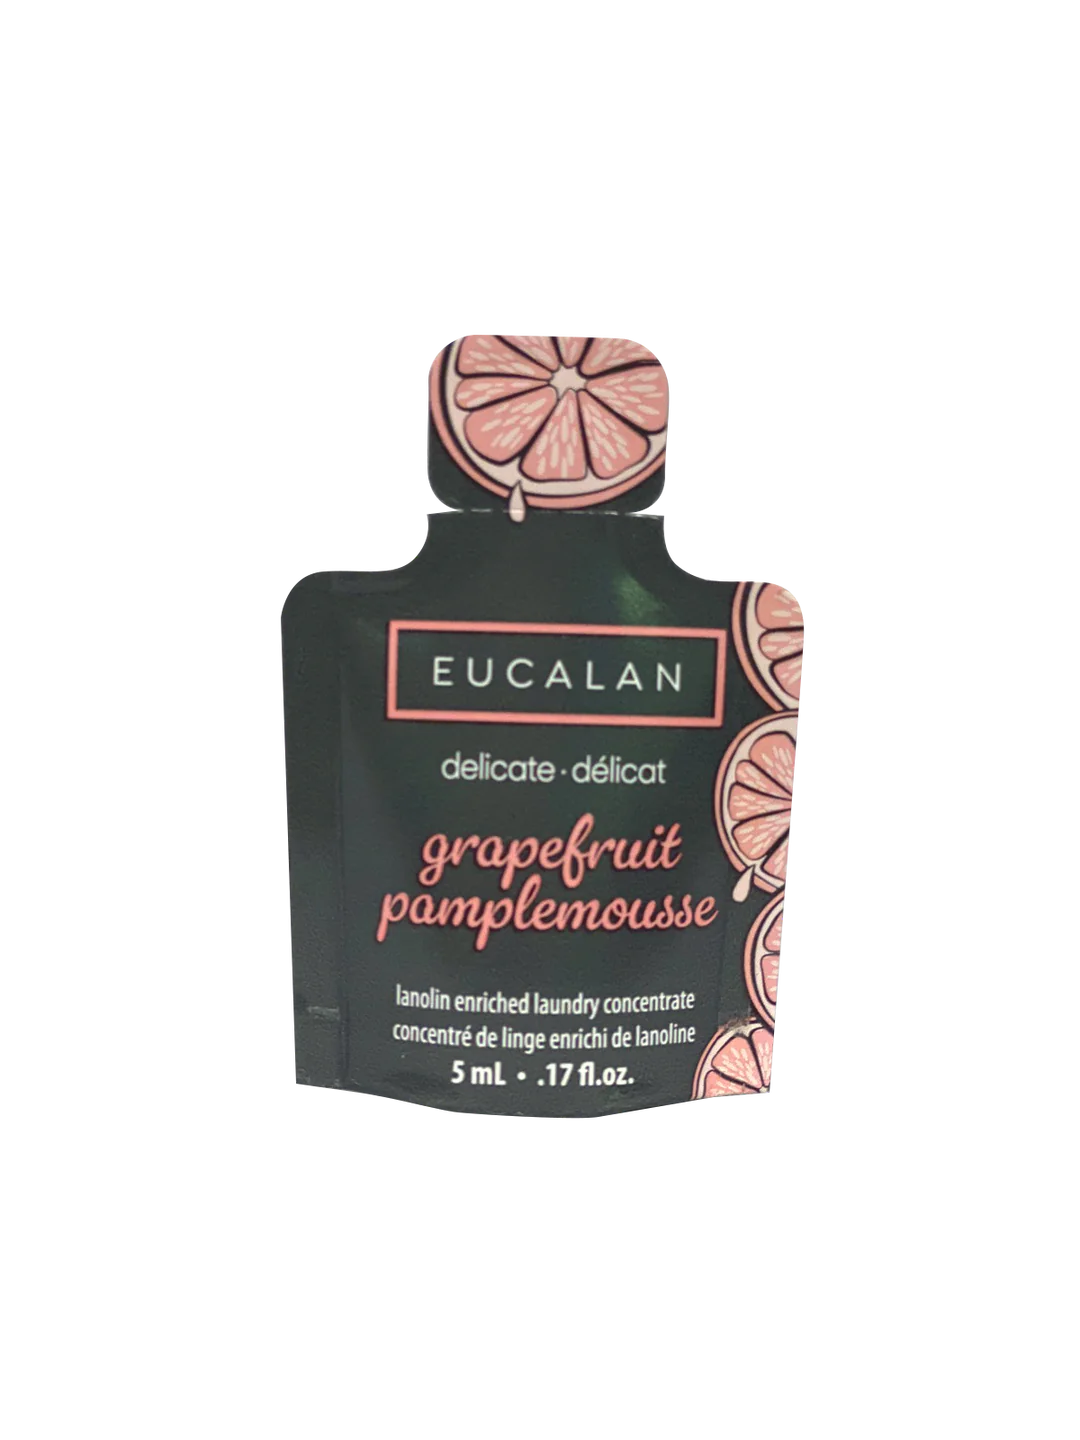 Eucalan - detergent delicat cu grapefruit - 5 ml